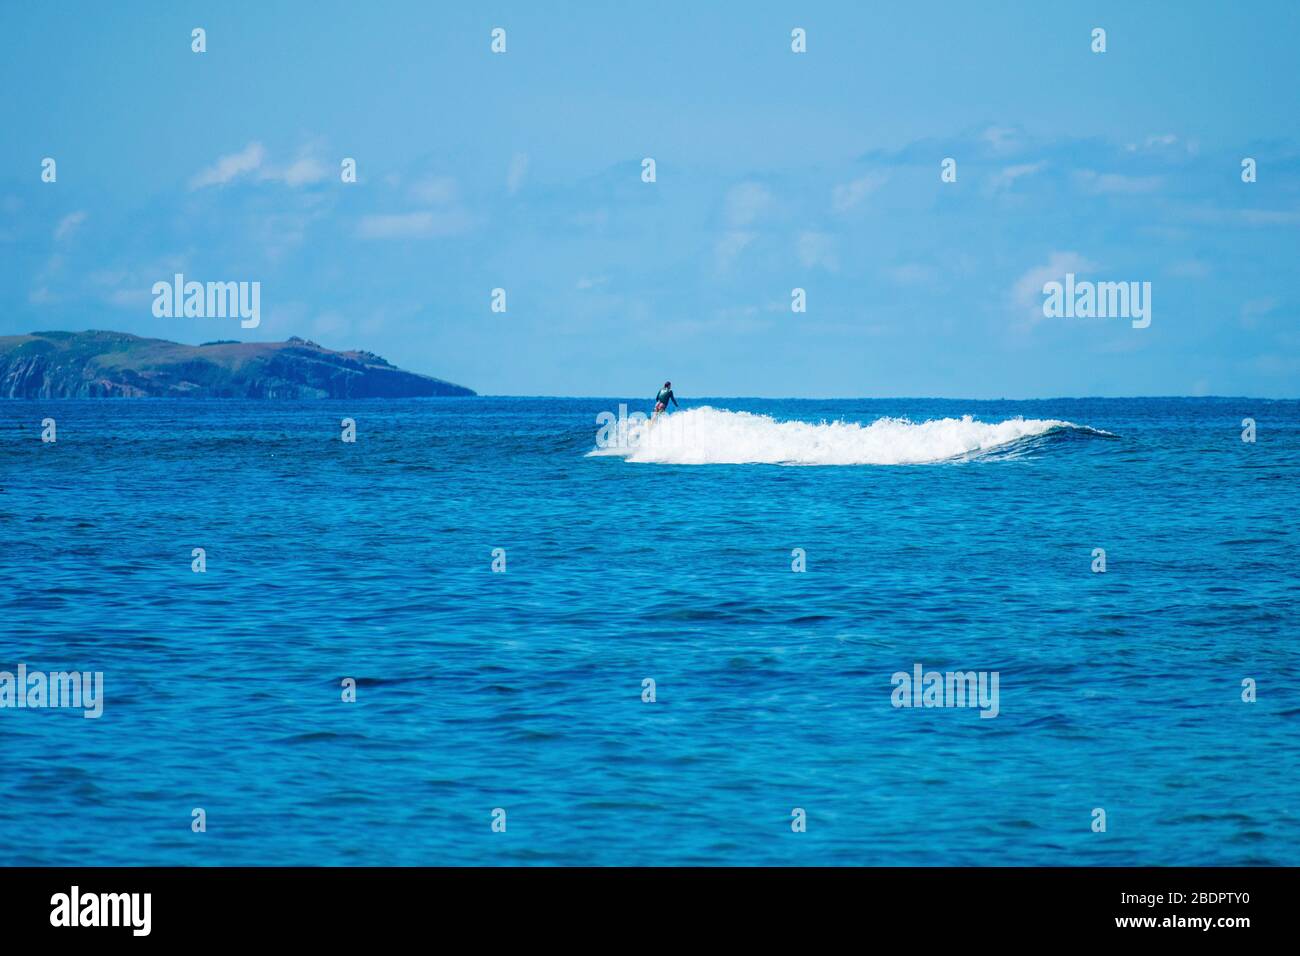 S Thomas United States Virgin Islands, fond de sports nautiques libre de droits, vacances à la plage des Caraïbes, surf, surfer, paysage paisible de l'océan Banque D'Images